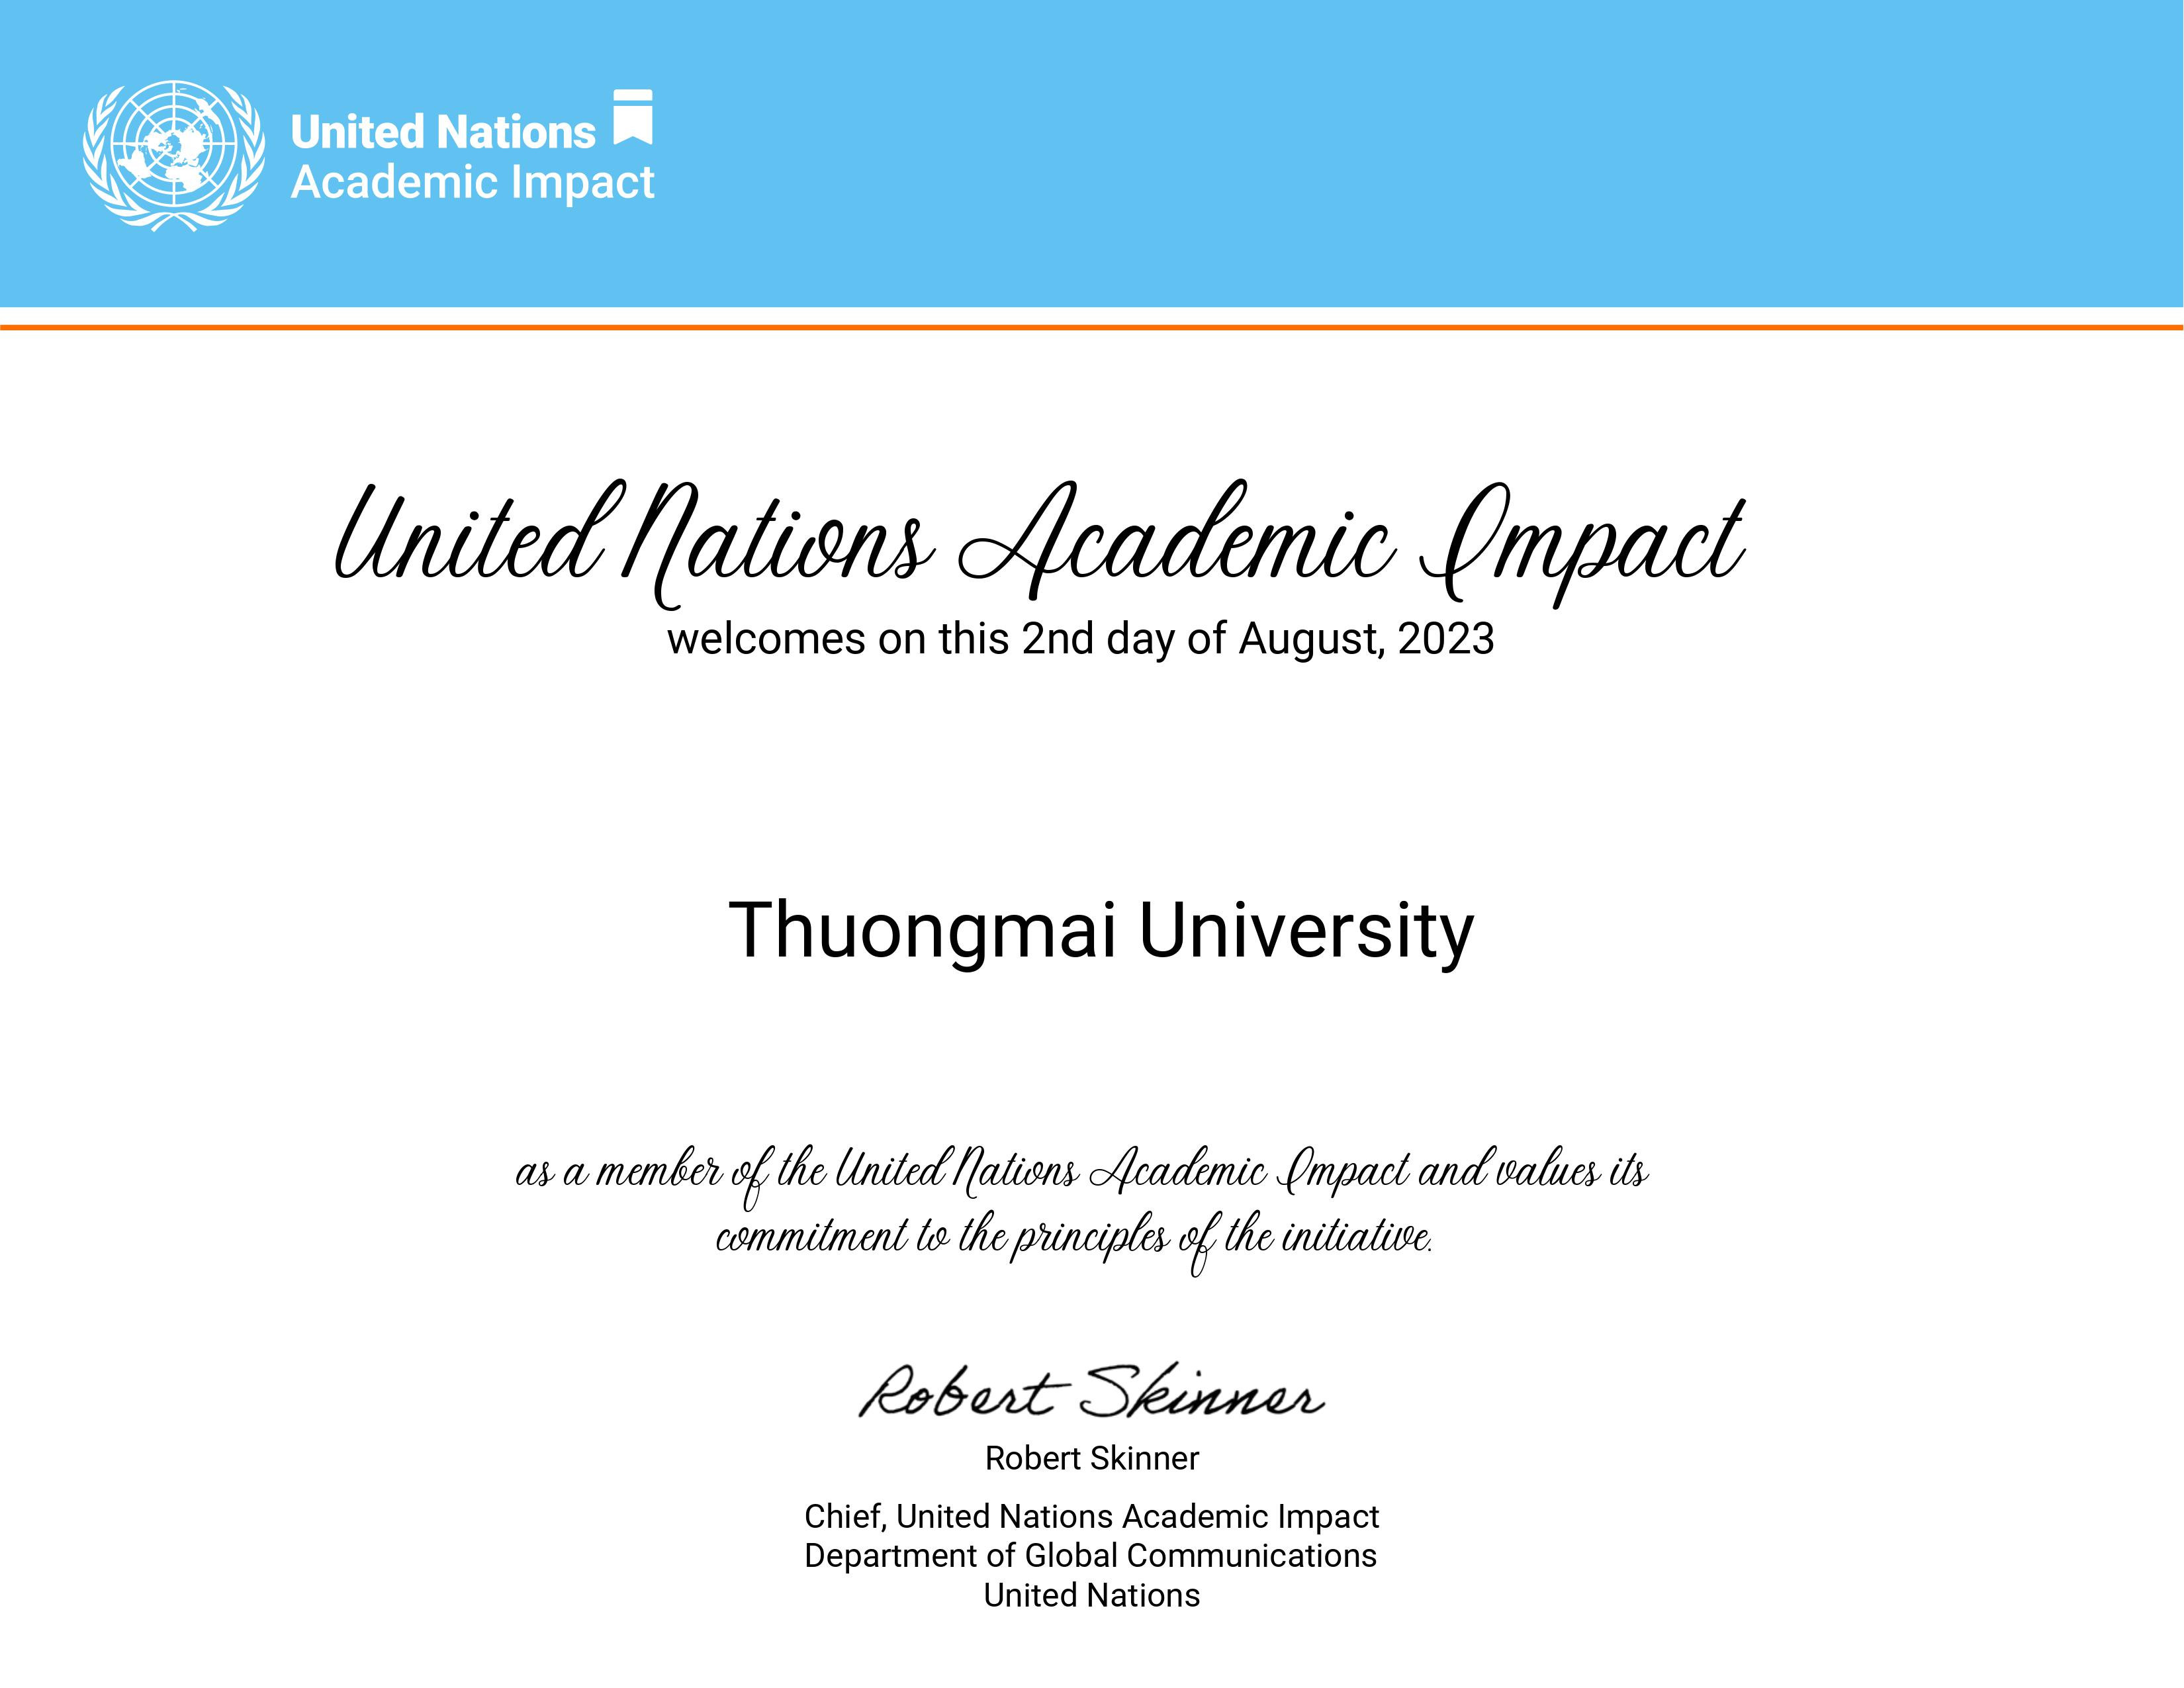 TMU chính thức trở thành thành viên của Tổ chức UNAI (Tác động học thuật của Liên Hiệp Quốc)